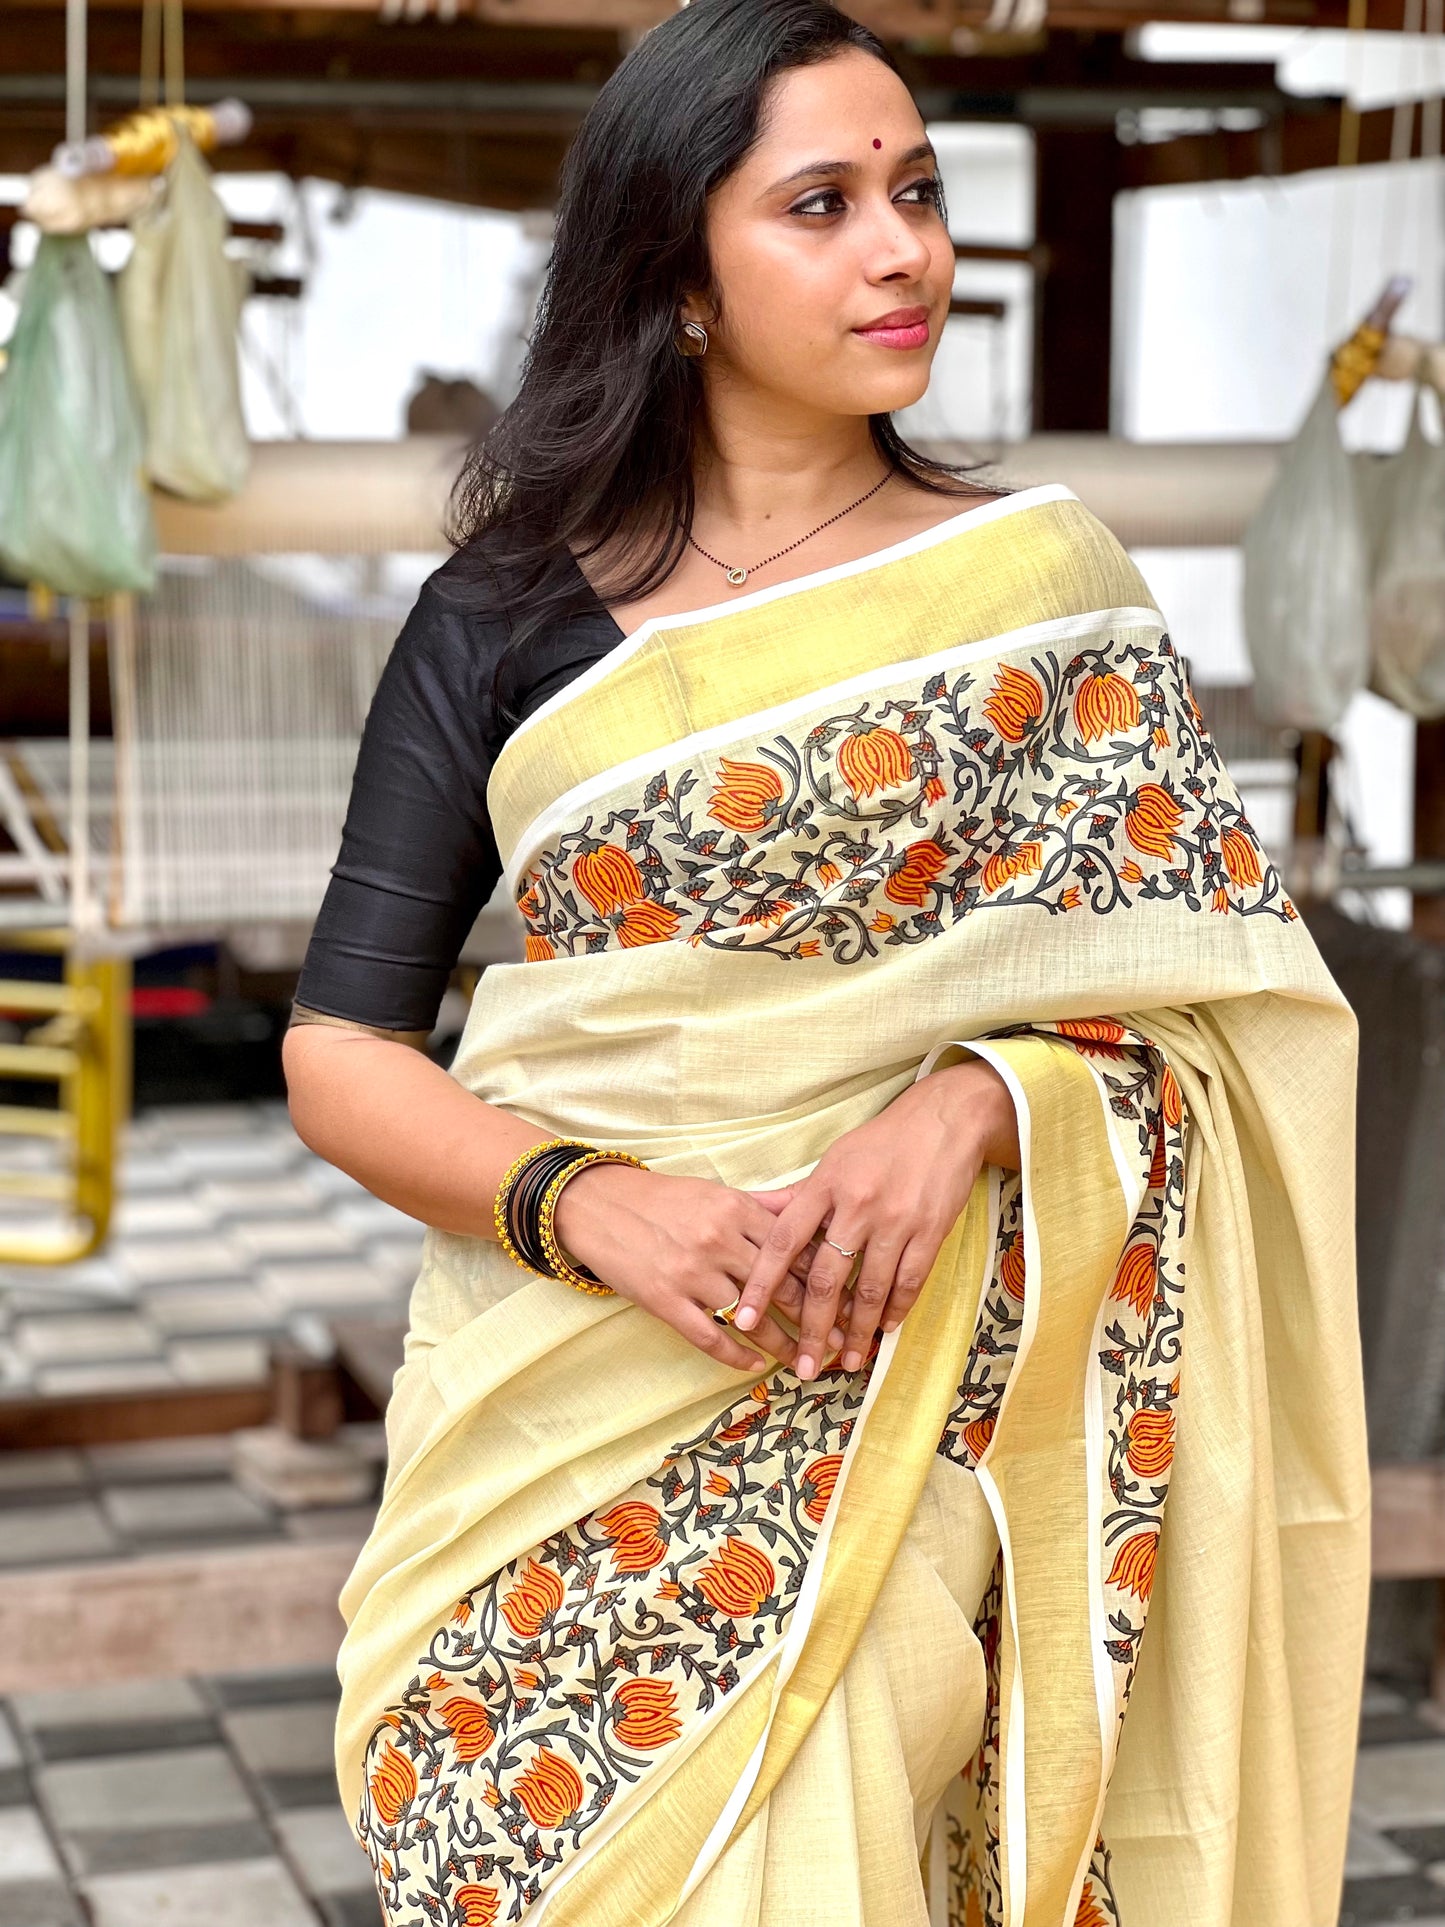 Southloom Jaipur Artisans & Kerala Weavers Collab Orange Floral Printed Tissue Kasavu Saree